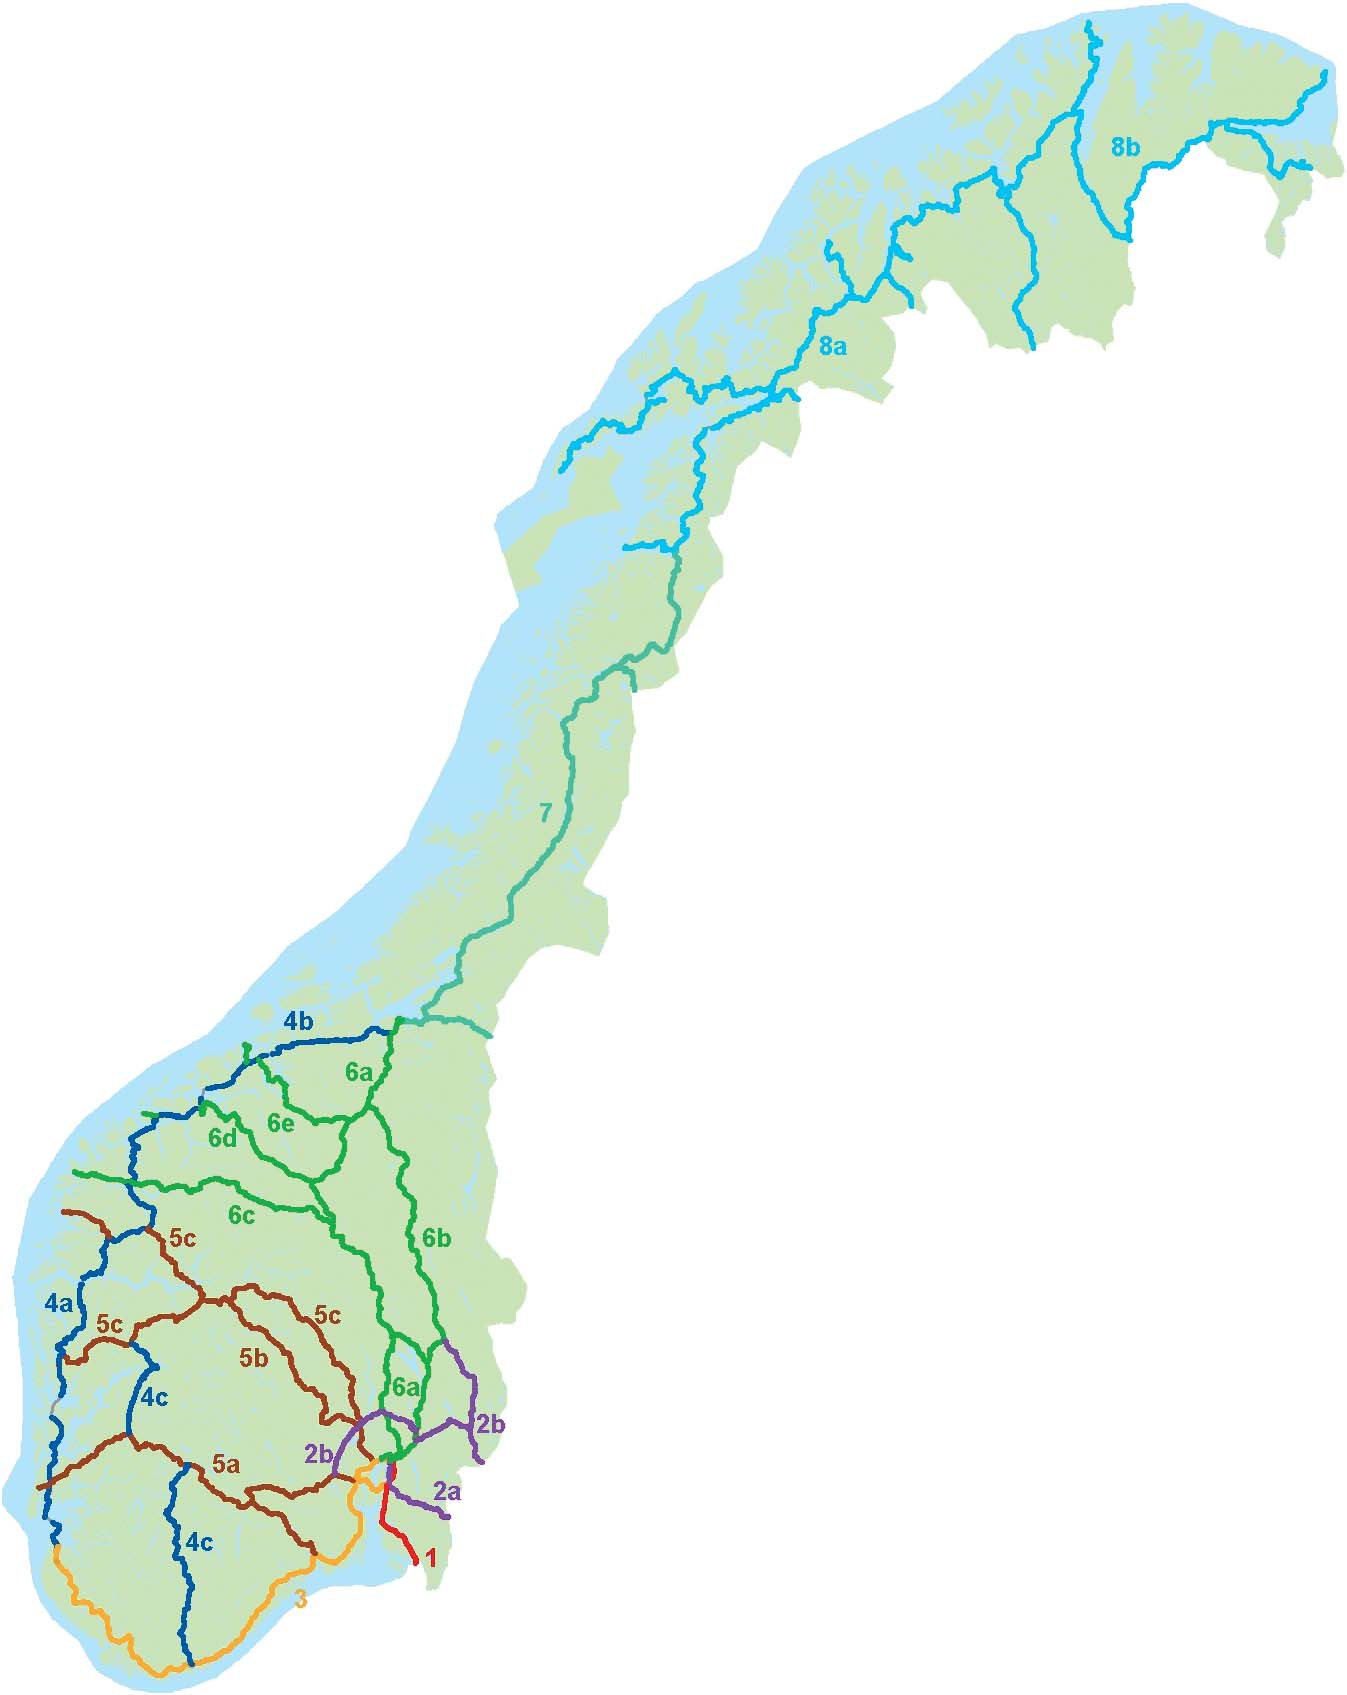 1 Stamvegnettet i dag Stamvegene er hovedpulsårene i det overordnede nasjonale vegtransportsystemet. De forbinder landsdeler og regioner med hverandre samt knytter Norge til utlandet.